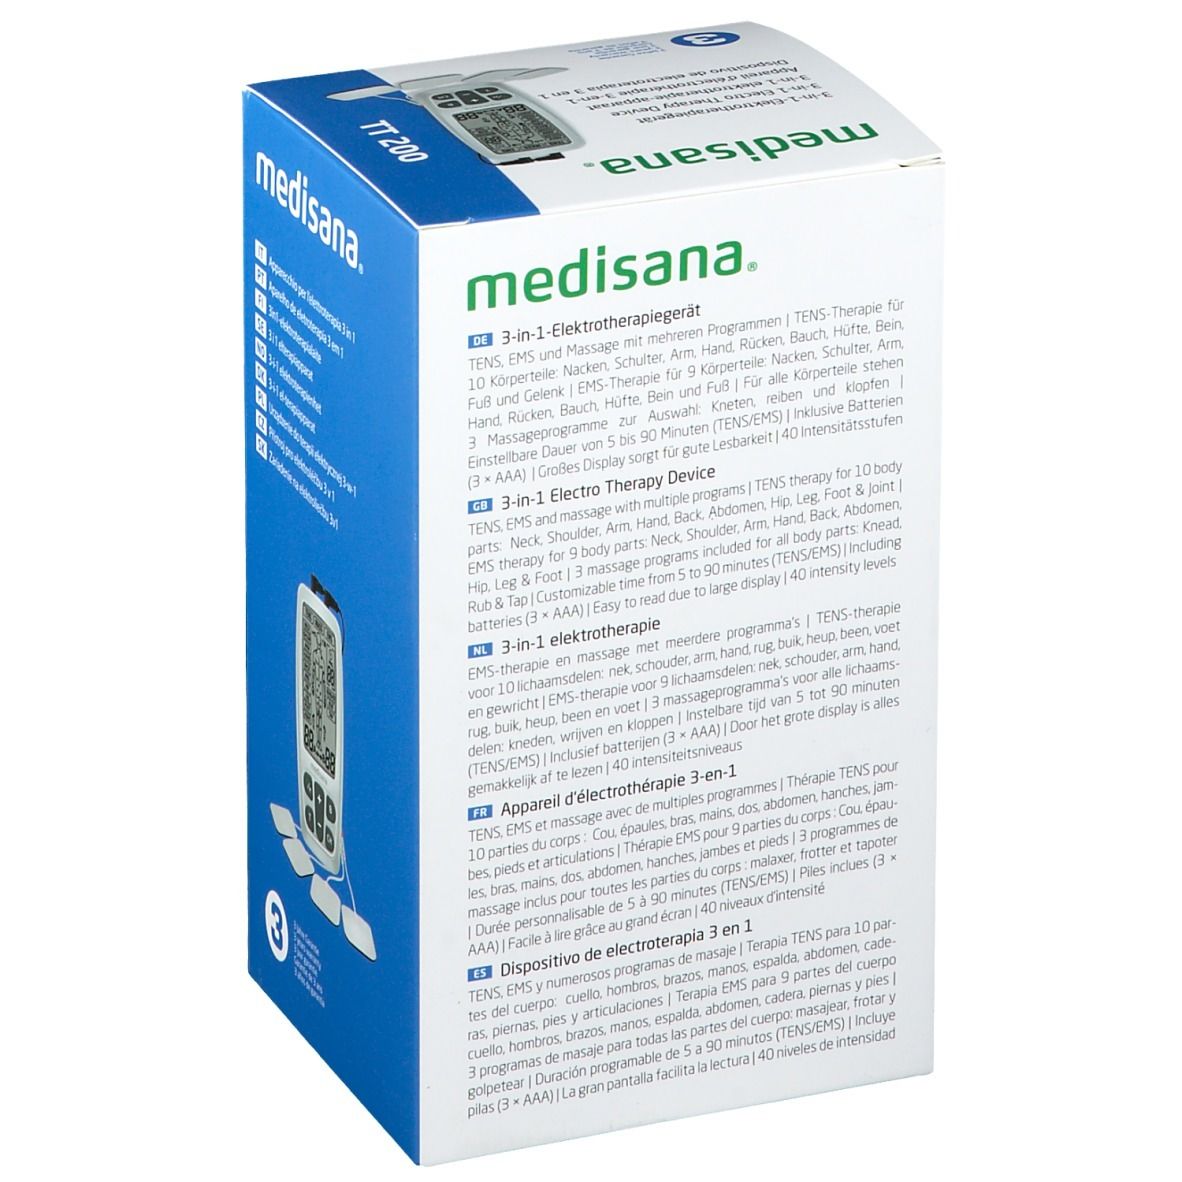 Medisana® 3-in-1 Dispositivo di Elettroterapia TT200